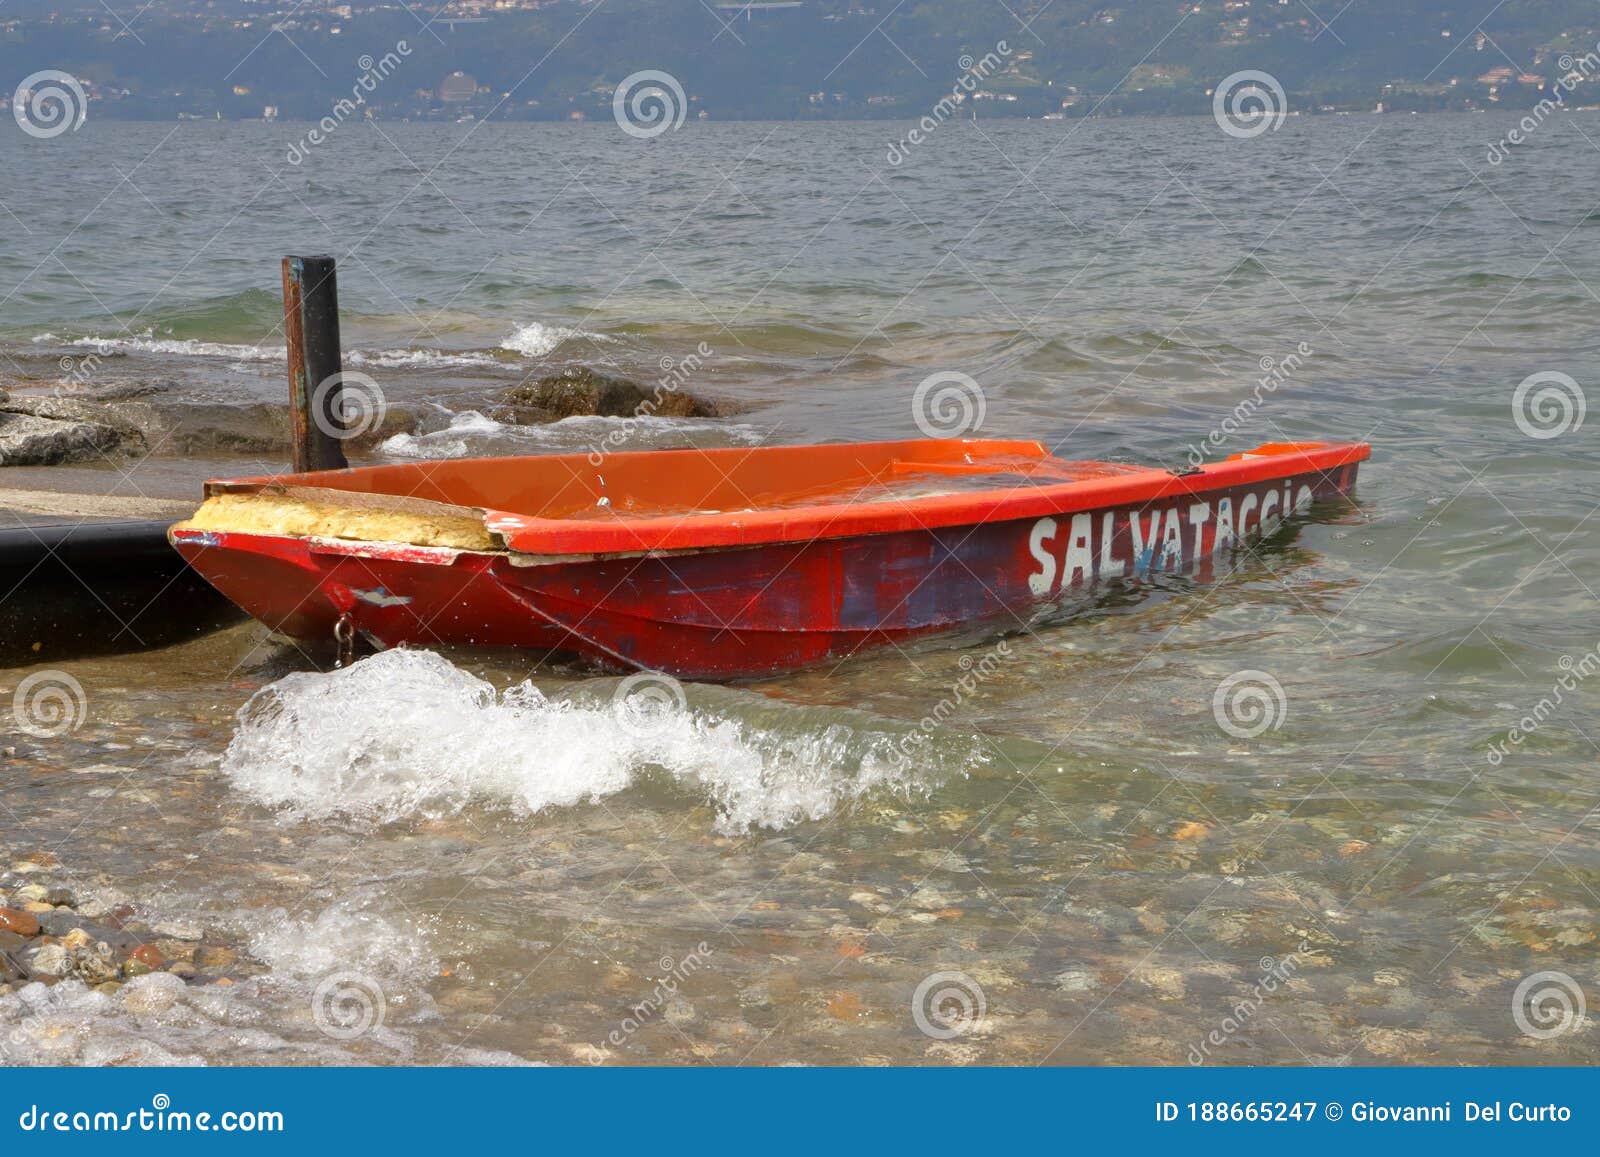 Räddningsbåt På Sjön Med Skrivande I Italian Salvataggio, Vilket Betyder  Engelska Räddningsbåt Fotografering för Bildbyråer - Bild av betydelse,  skadlig: 188665247